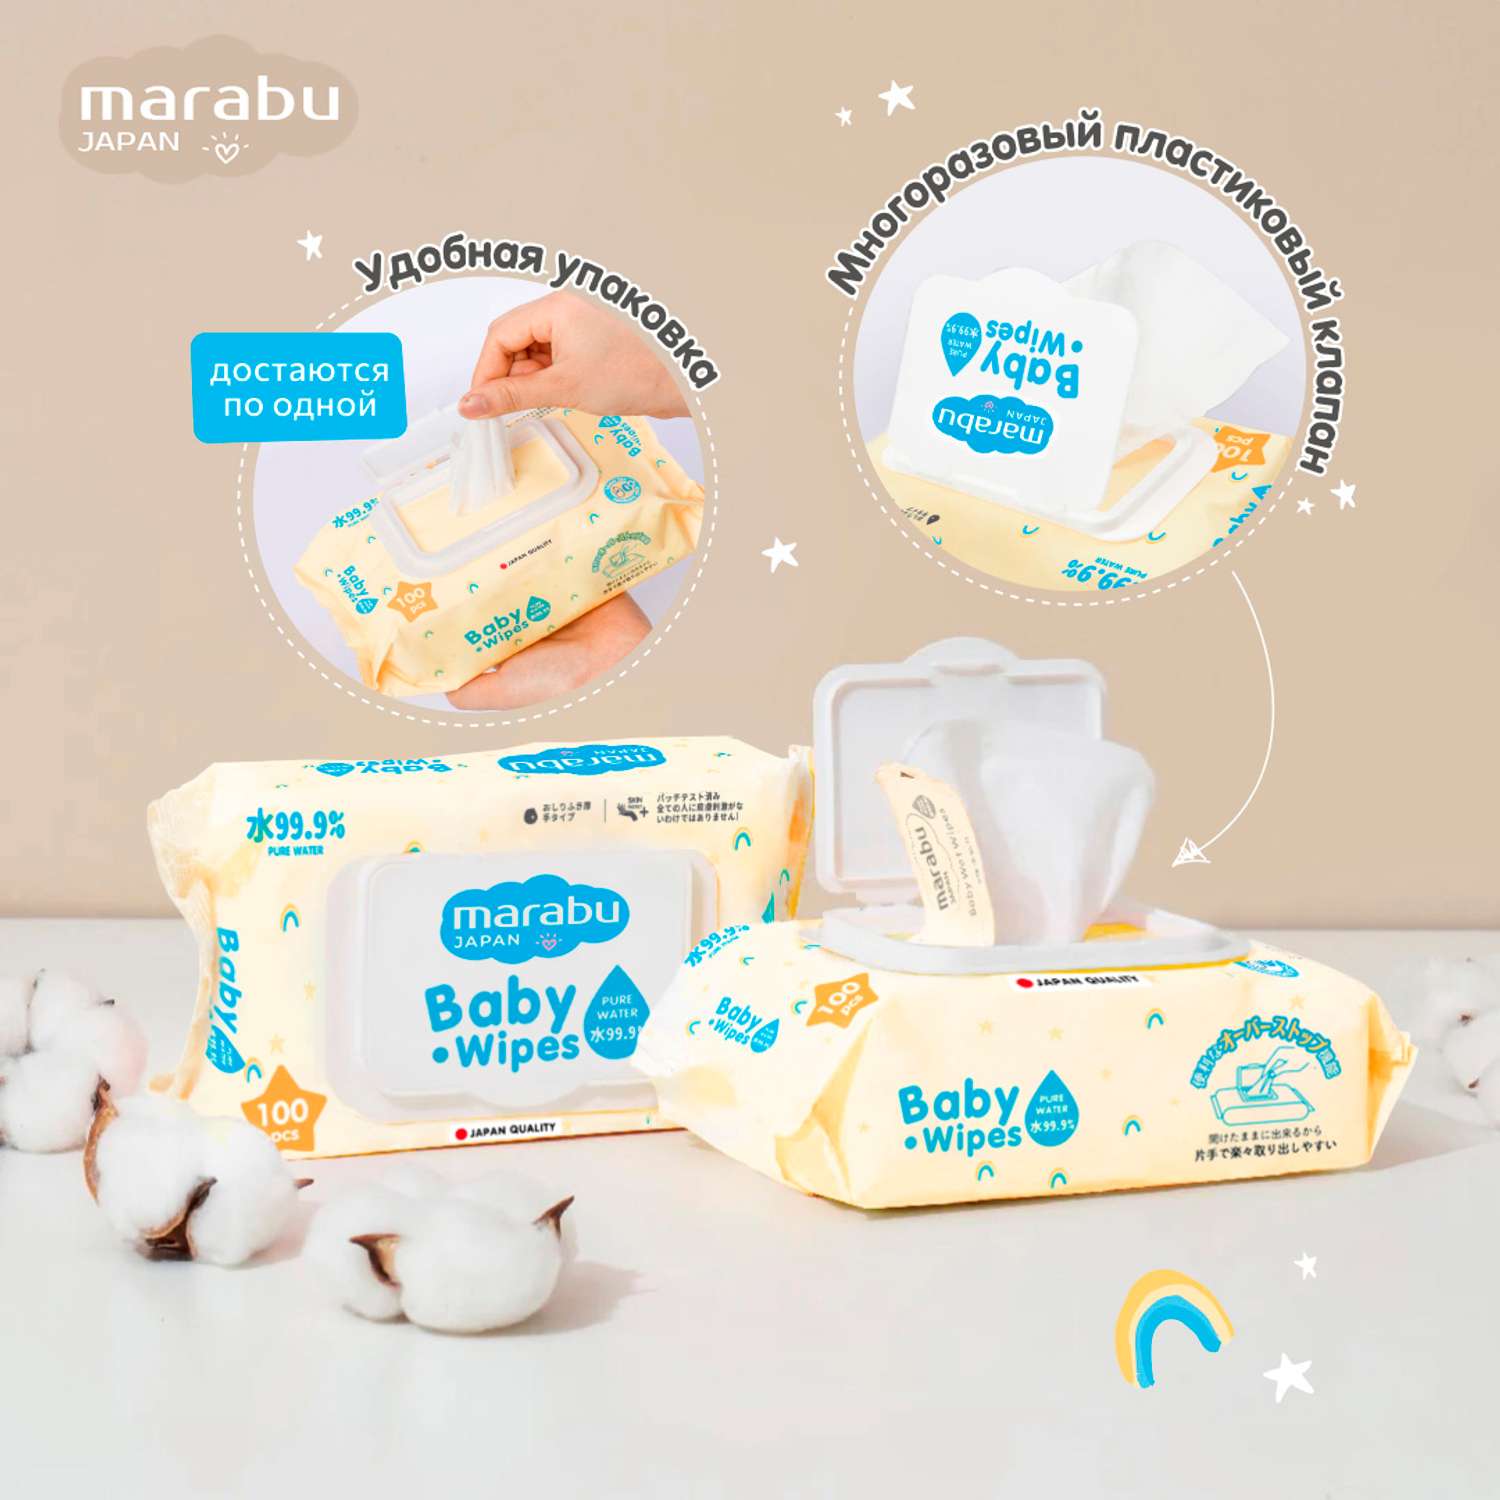 Влажные салфетки для детей MARABU 600 шт набор из 6 упаковок по 100 шт - фото 3